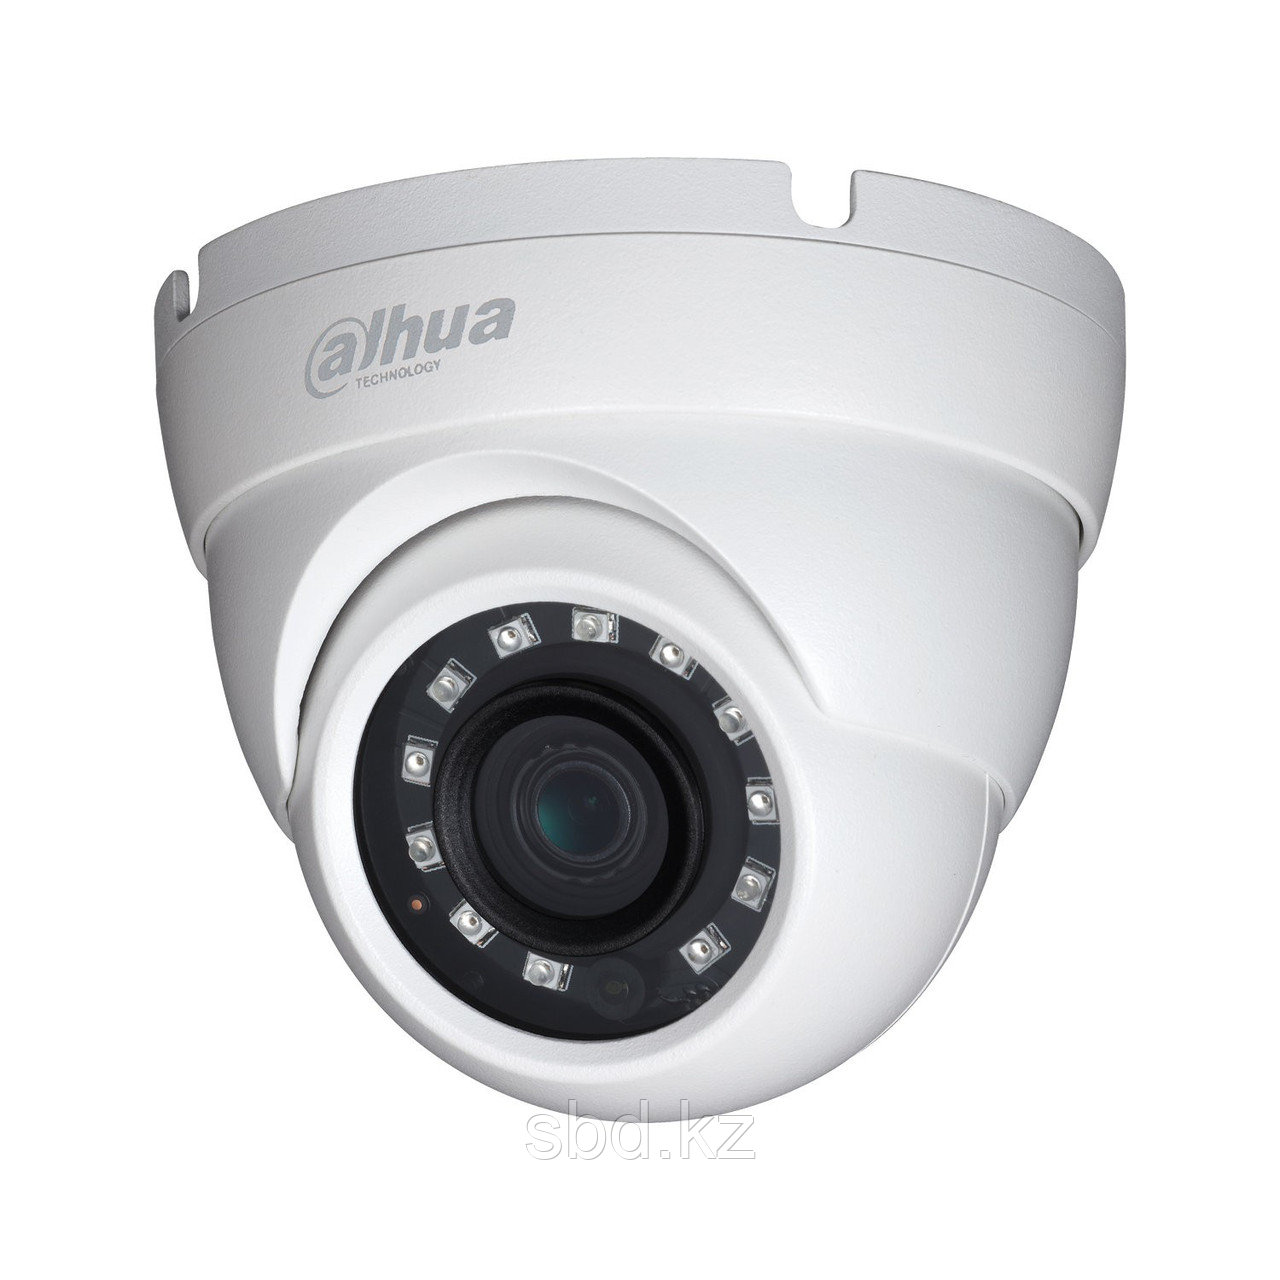 Камера видеонаблюдения внутренняя HAC-HDW1200MP Dahua Technologylogy